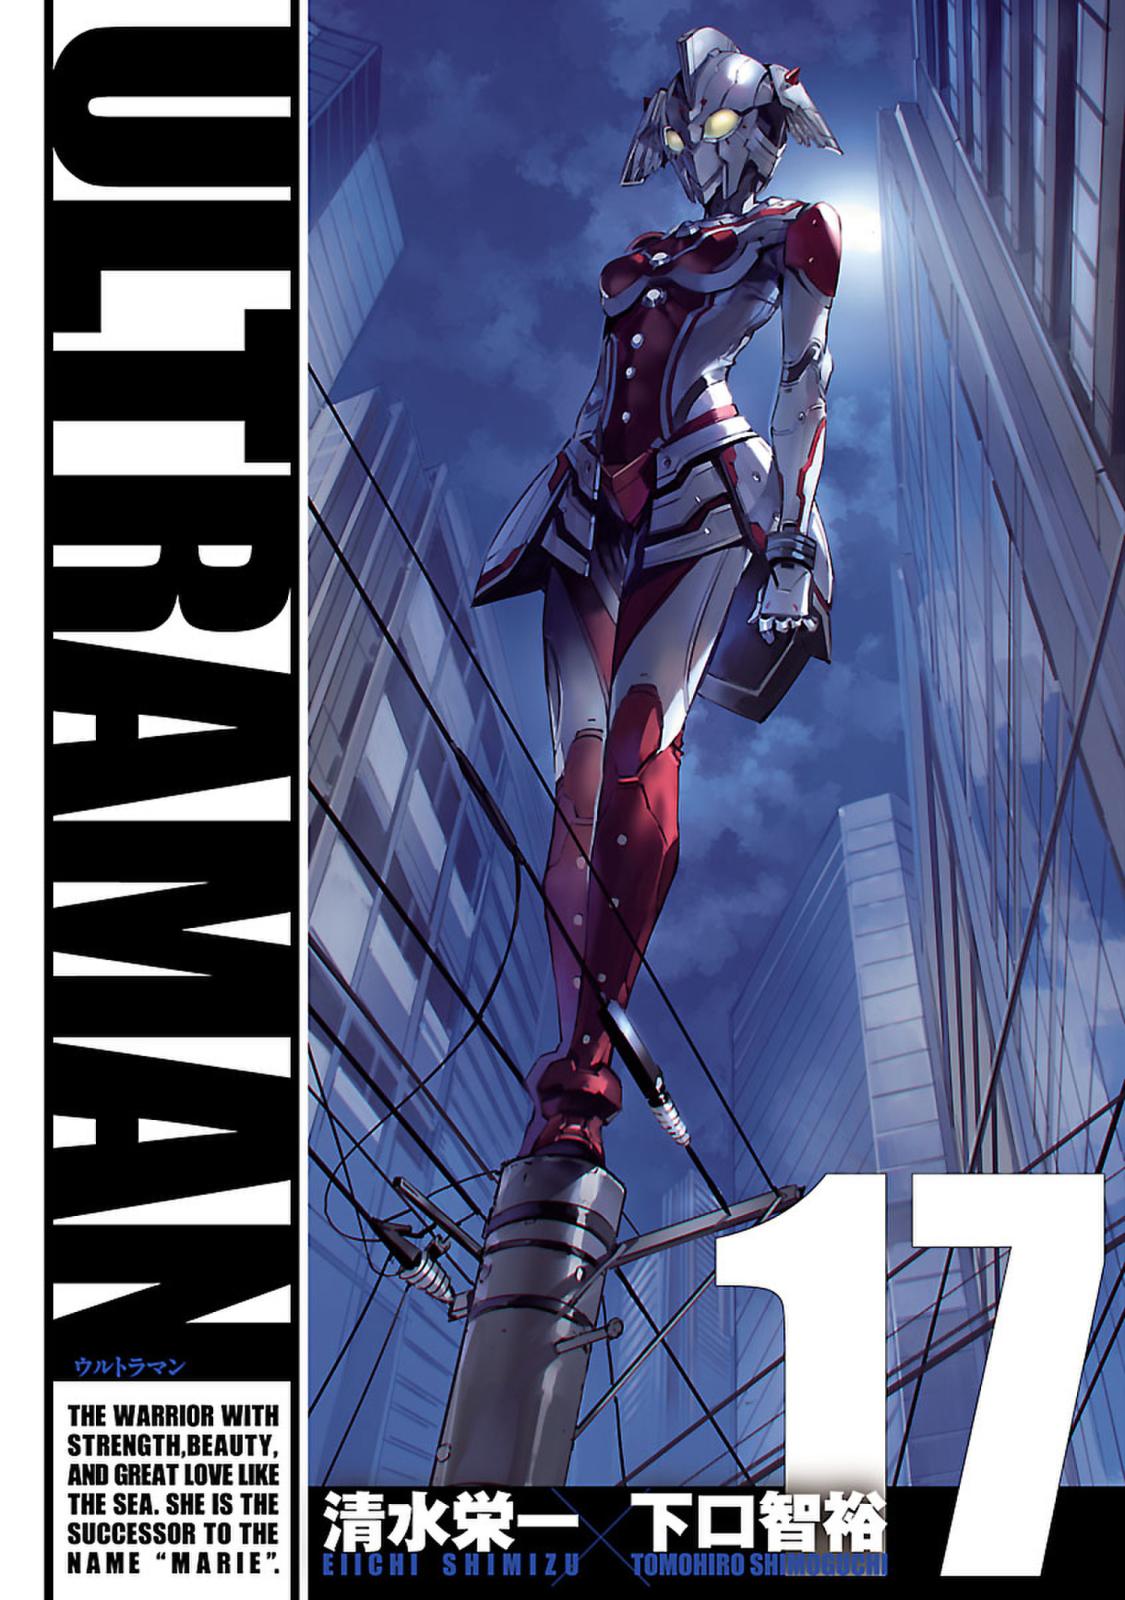 Ultraman 漫画 コミックを読むならmusic Jp